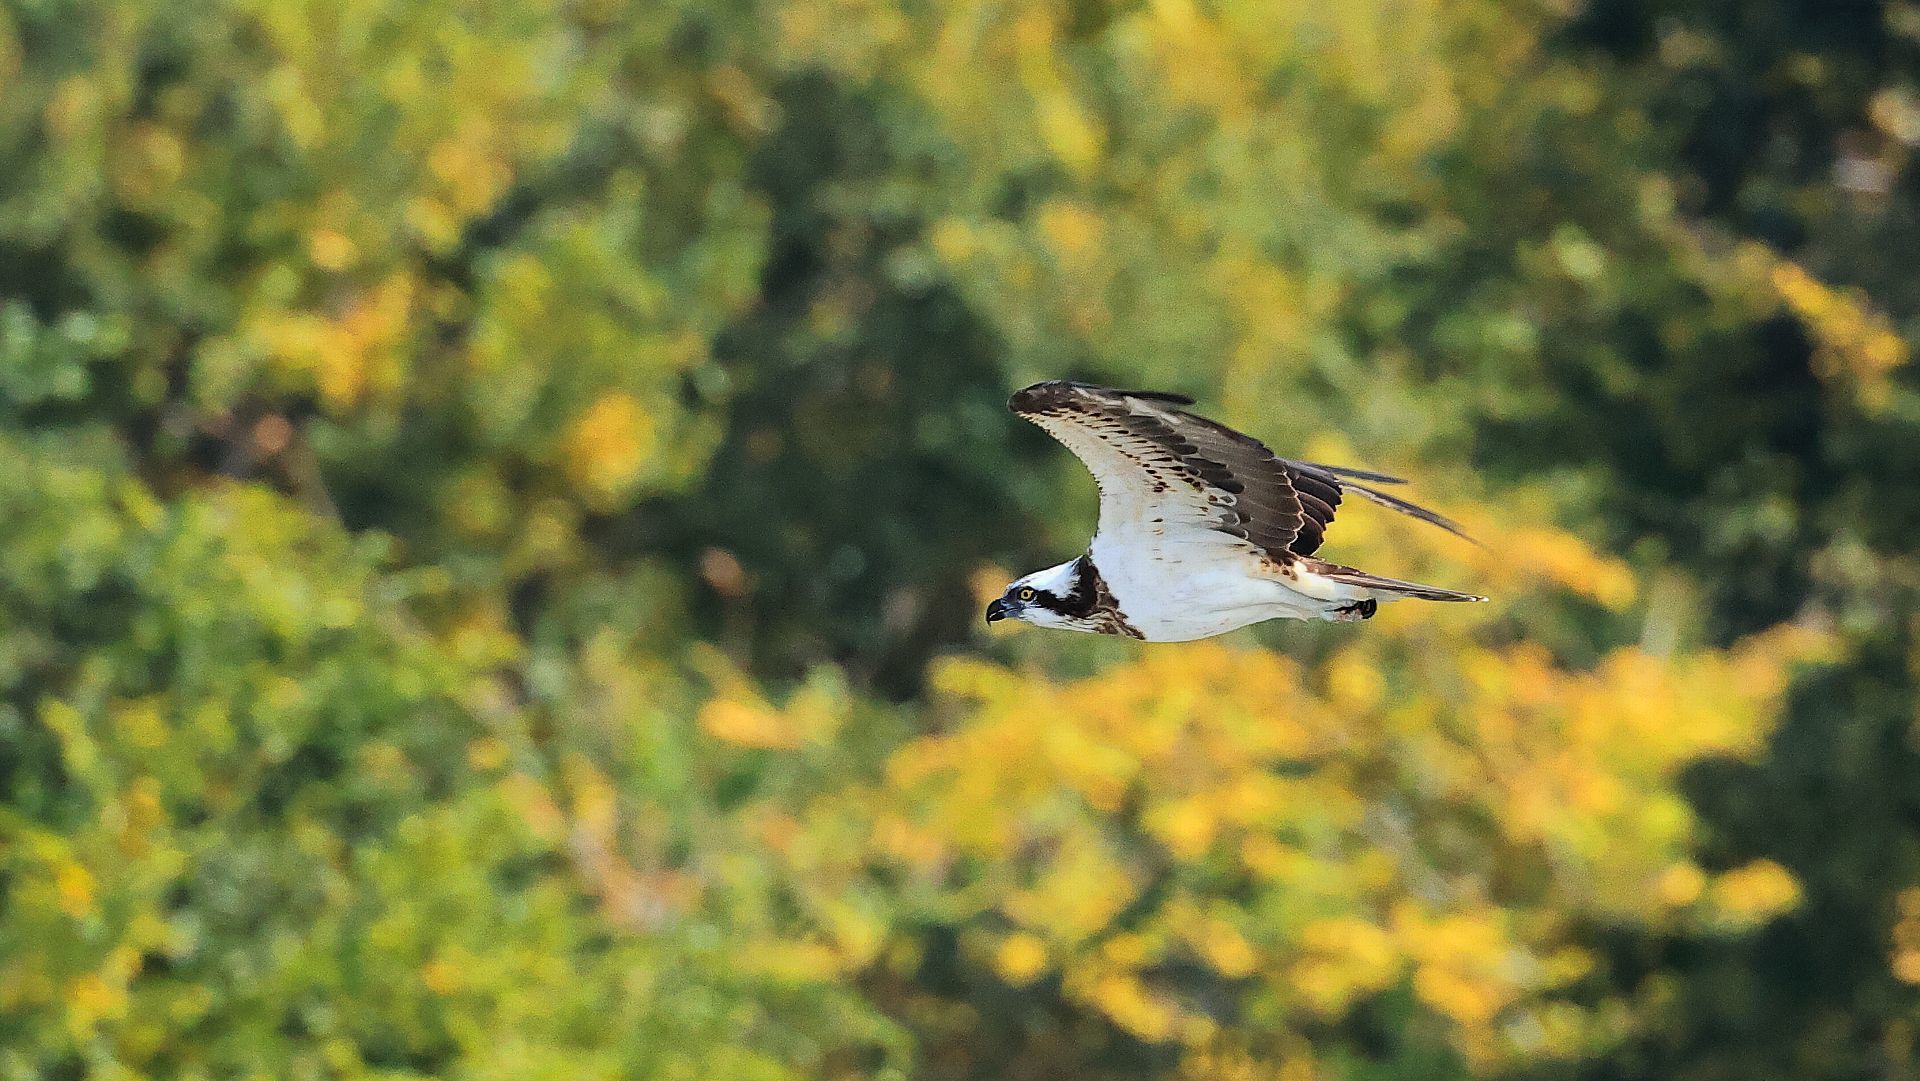 自宅そば相模川上空を黄葉背景に飛ぶミサゴ　Flying Osprey with yellow leaves background over the Sagami River near my house_f0105570_17470714.jpg